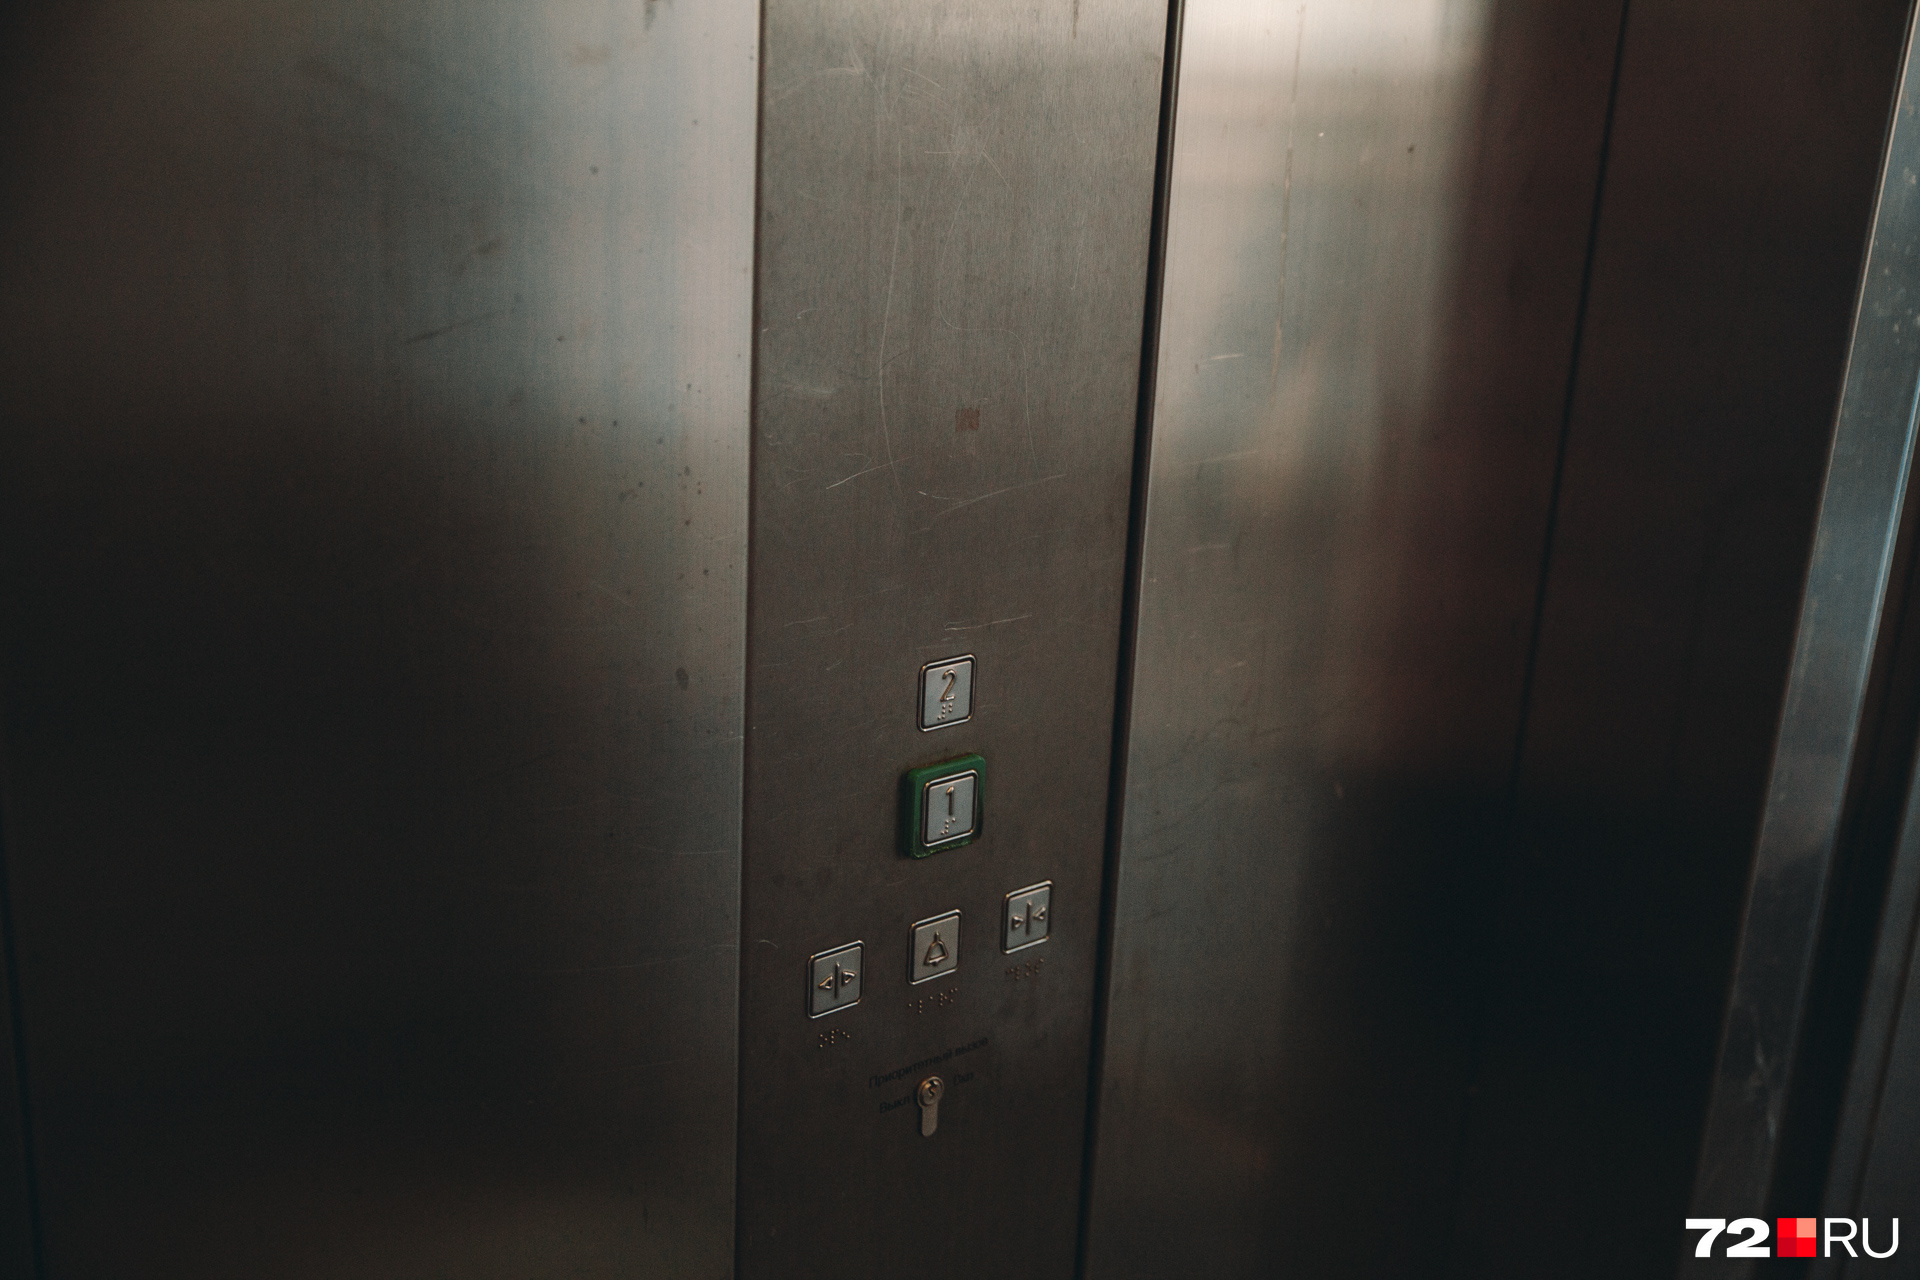 А жать надо было на эти. Зачем в лифтах две панели управления и почему не работает самая очевидная? Большой вопрос